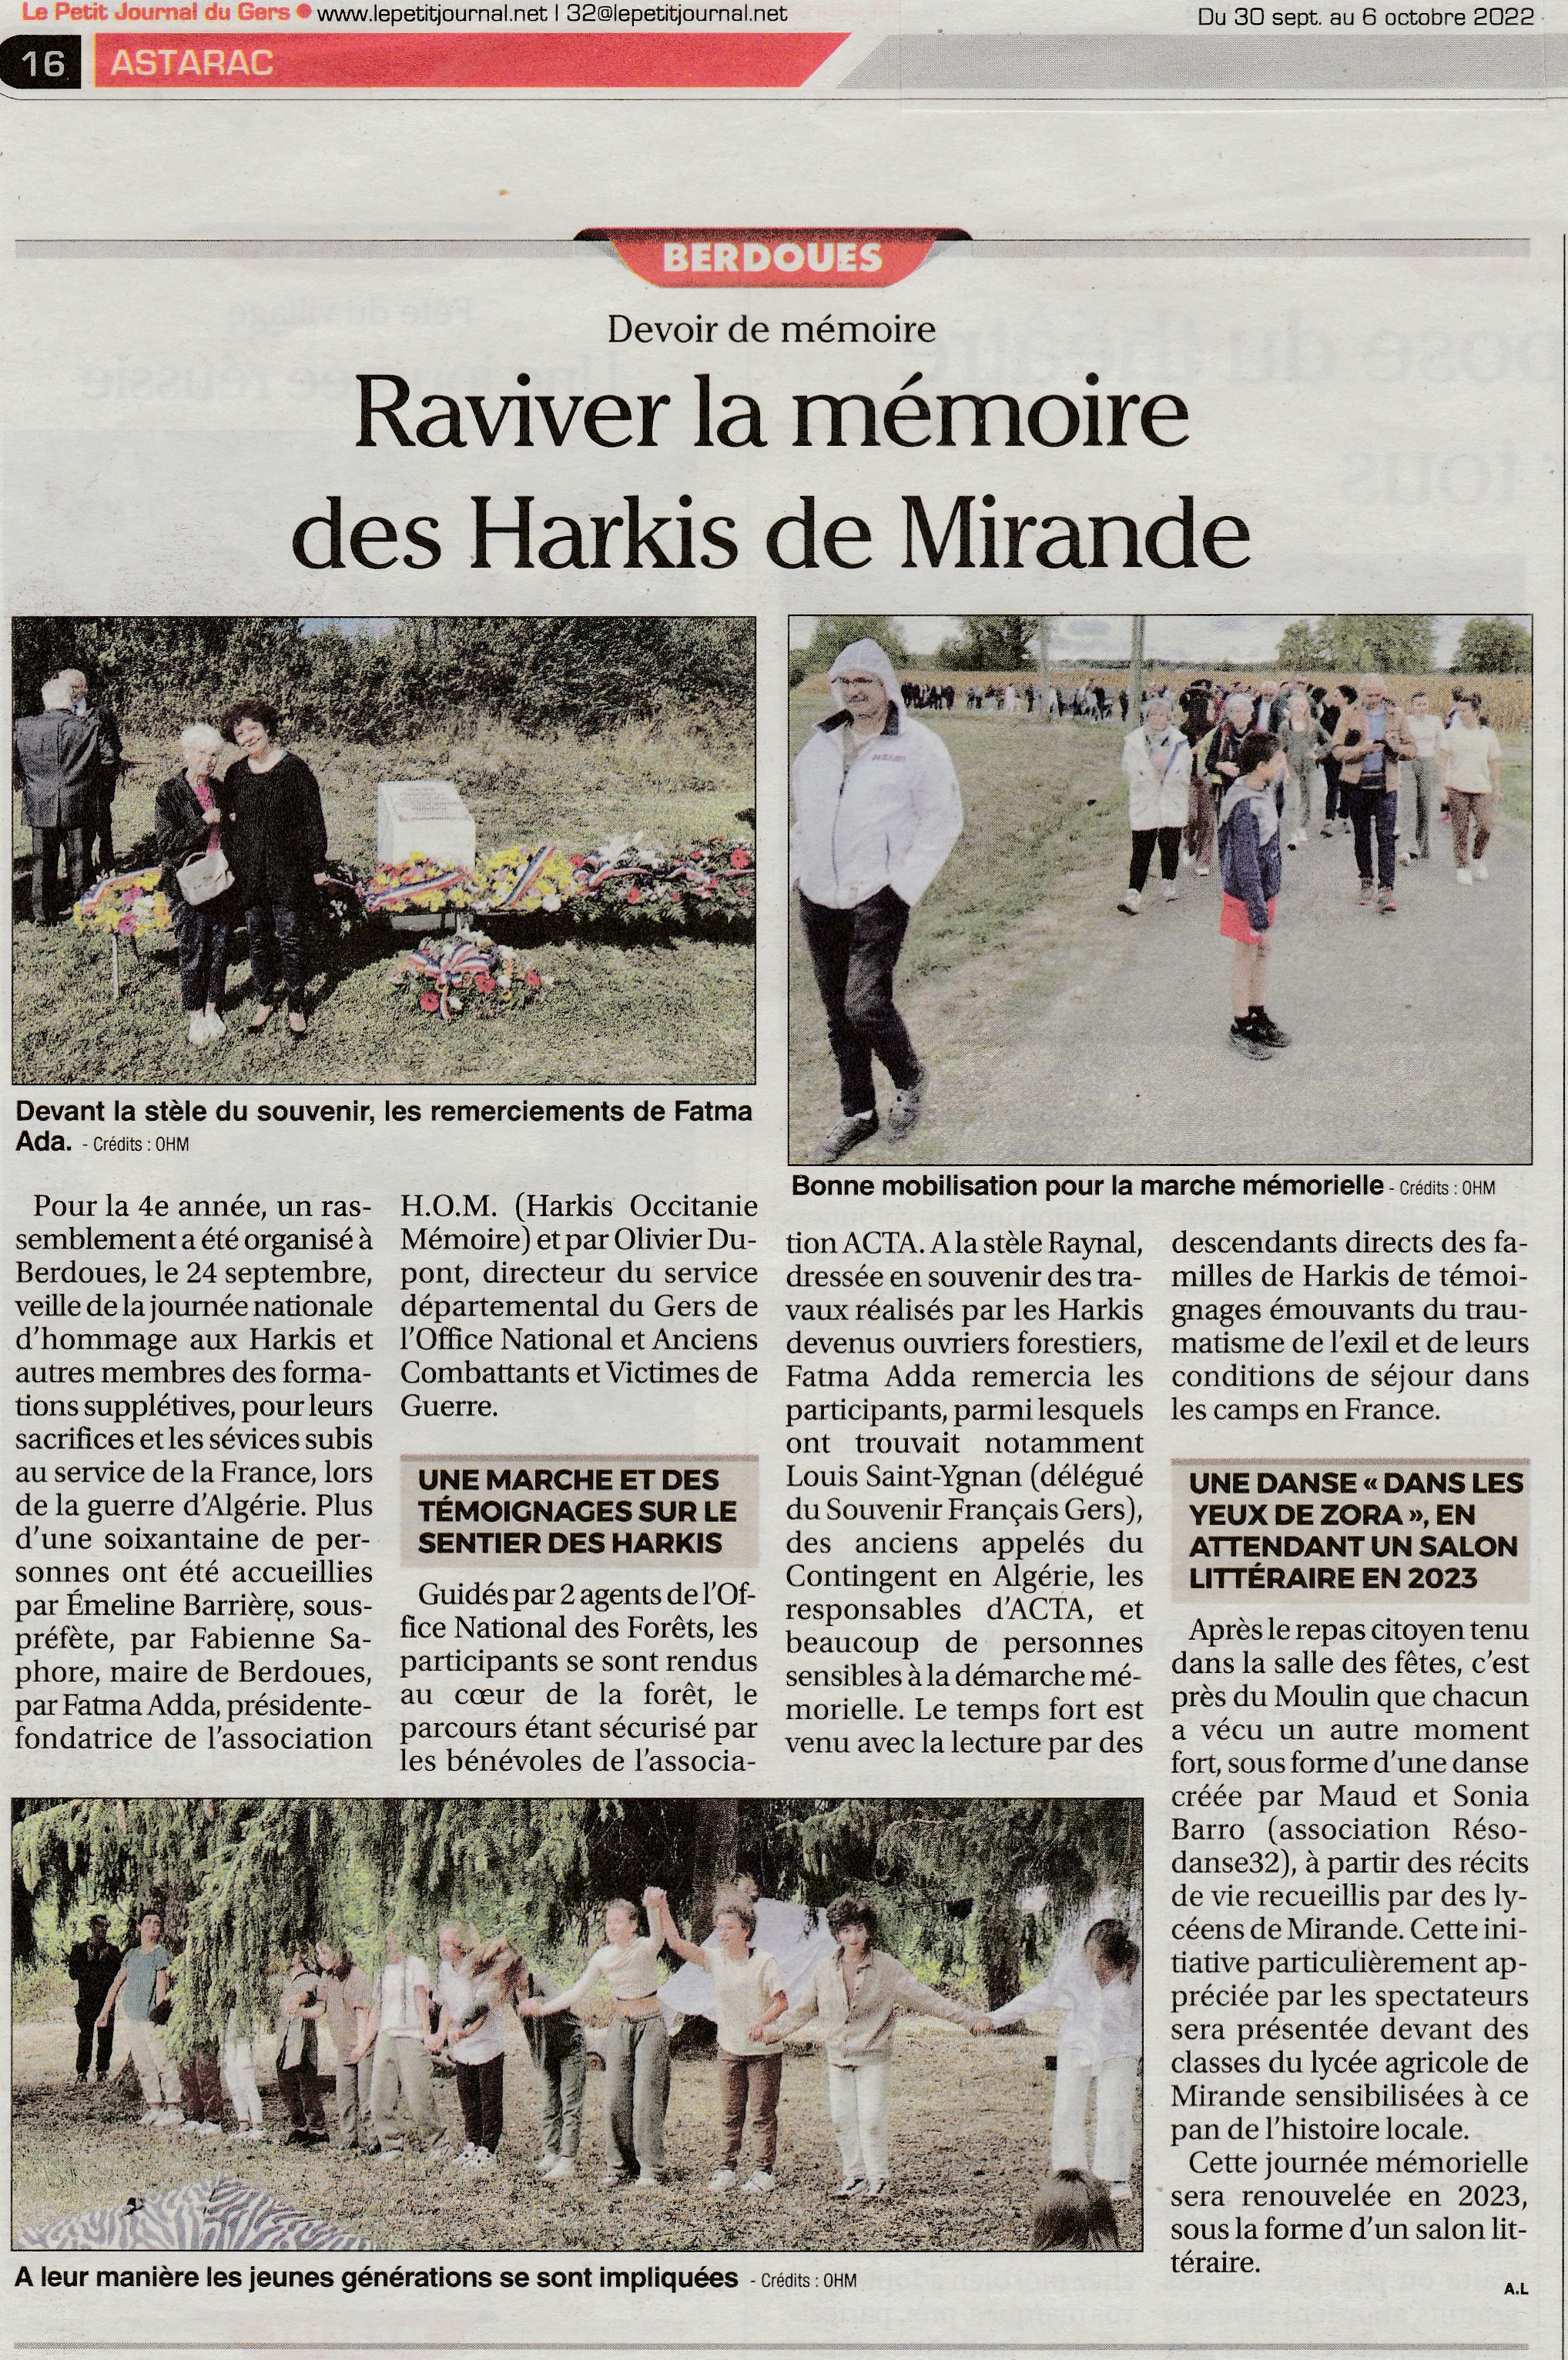 2022-09-24 : rassemblement d'hommage aux Harkis, marche mémorielle, témoignages et danse © lepetitjournal.net / HOM